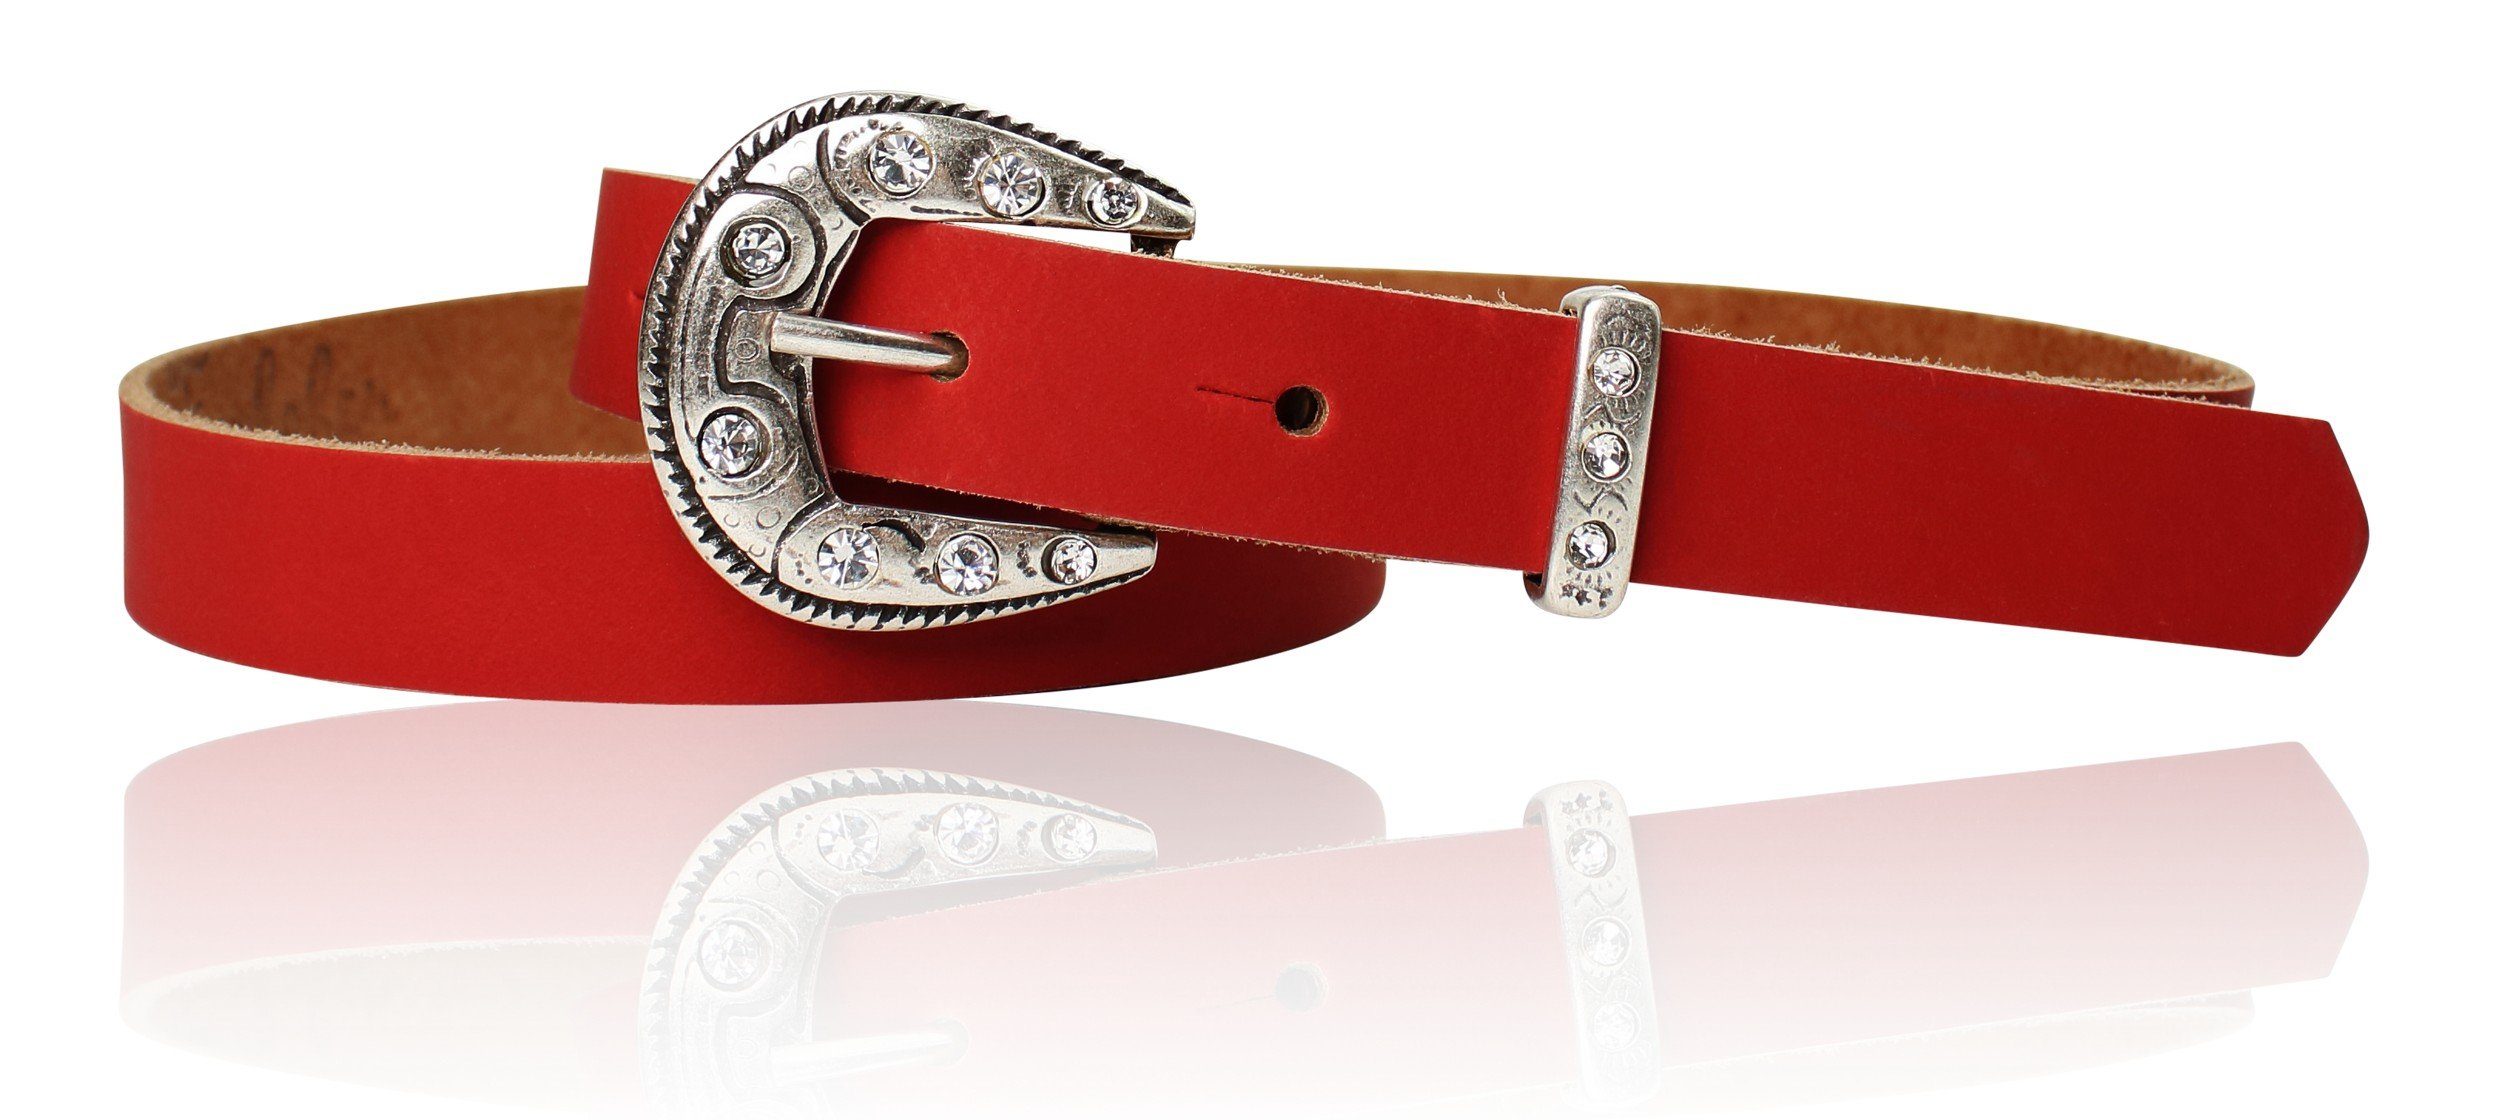 FRONHOFER Ledergürtel 18592 Kindergürtel mit Straßschnalle und Schlaufe, echtes Leder, 2 cm breit Rot